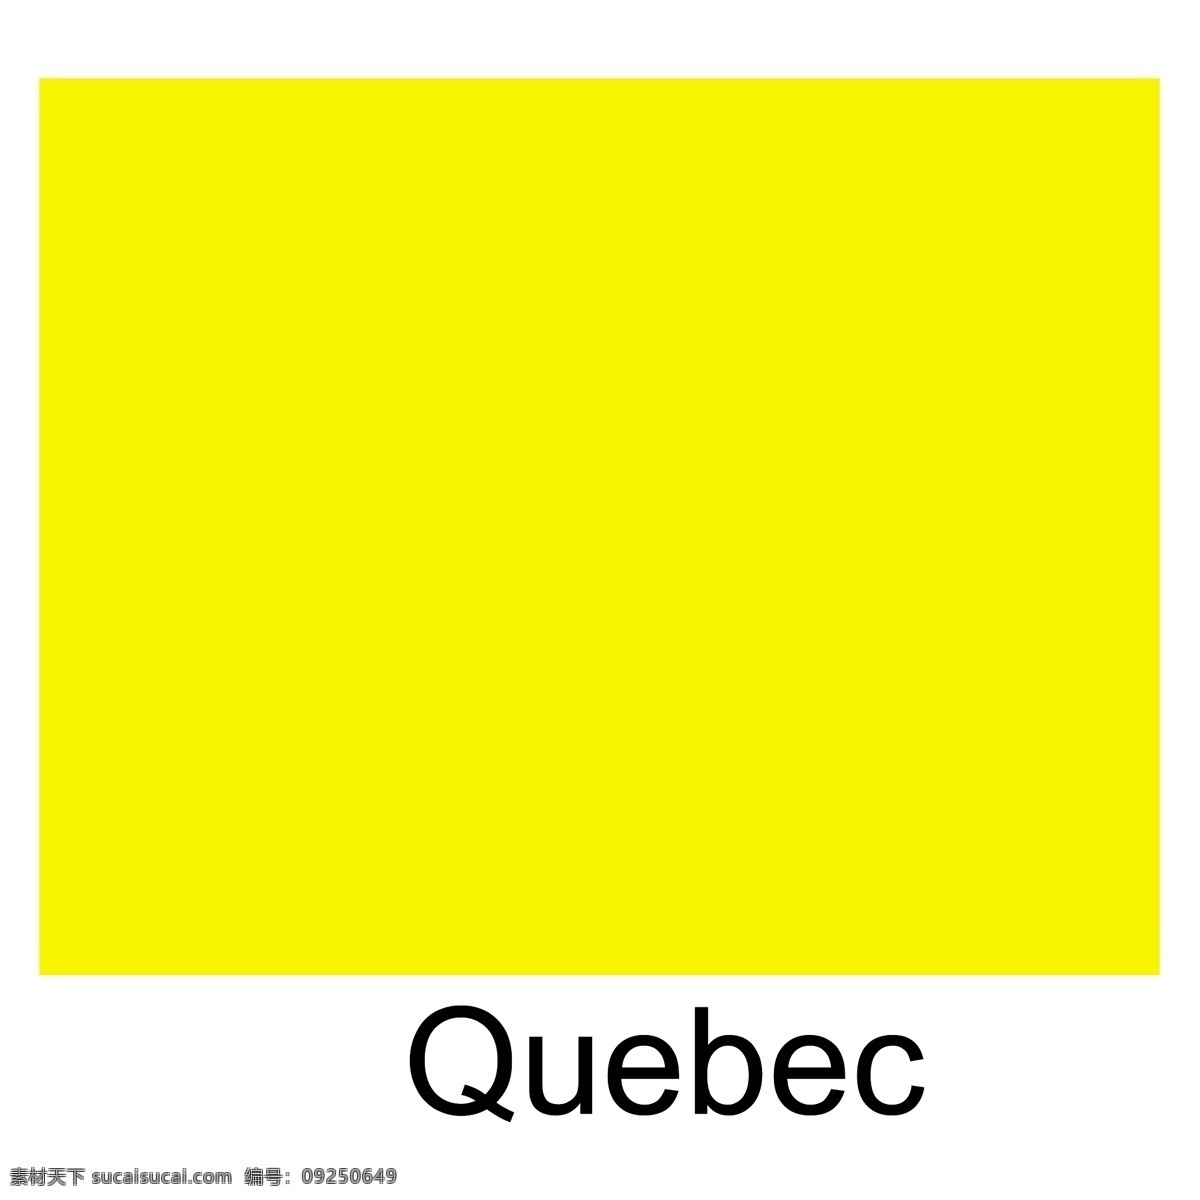 魁北克 国旗 自由 图案 标志